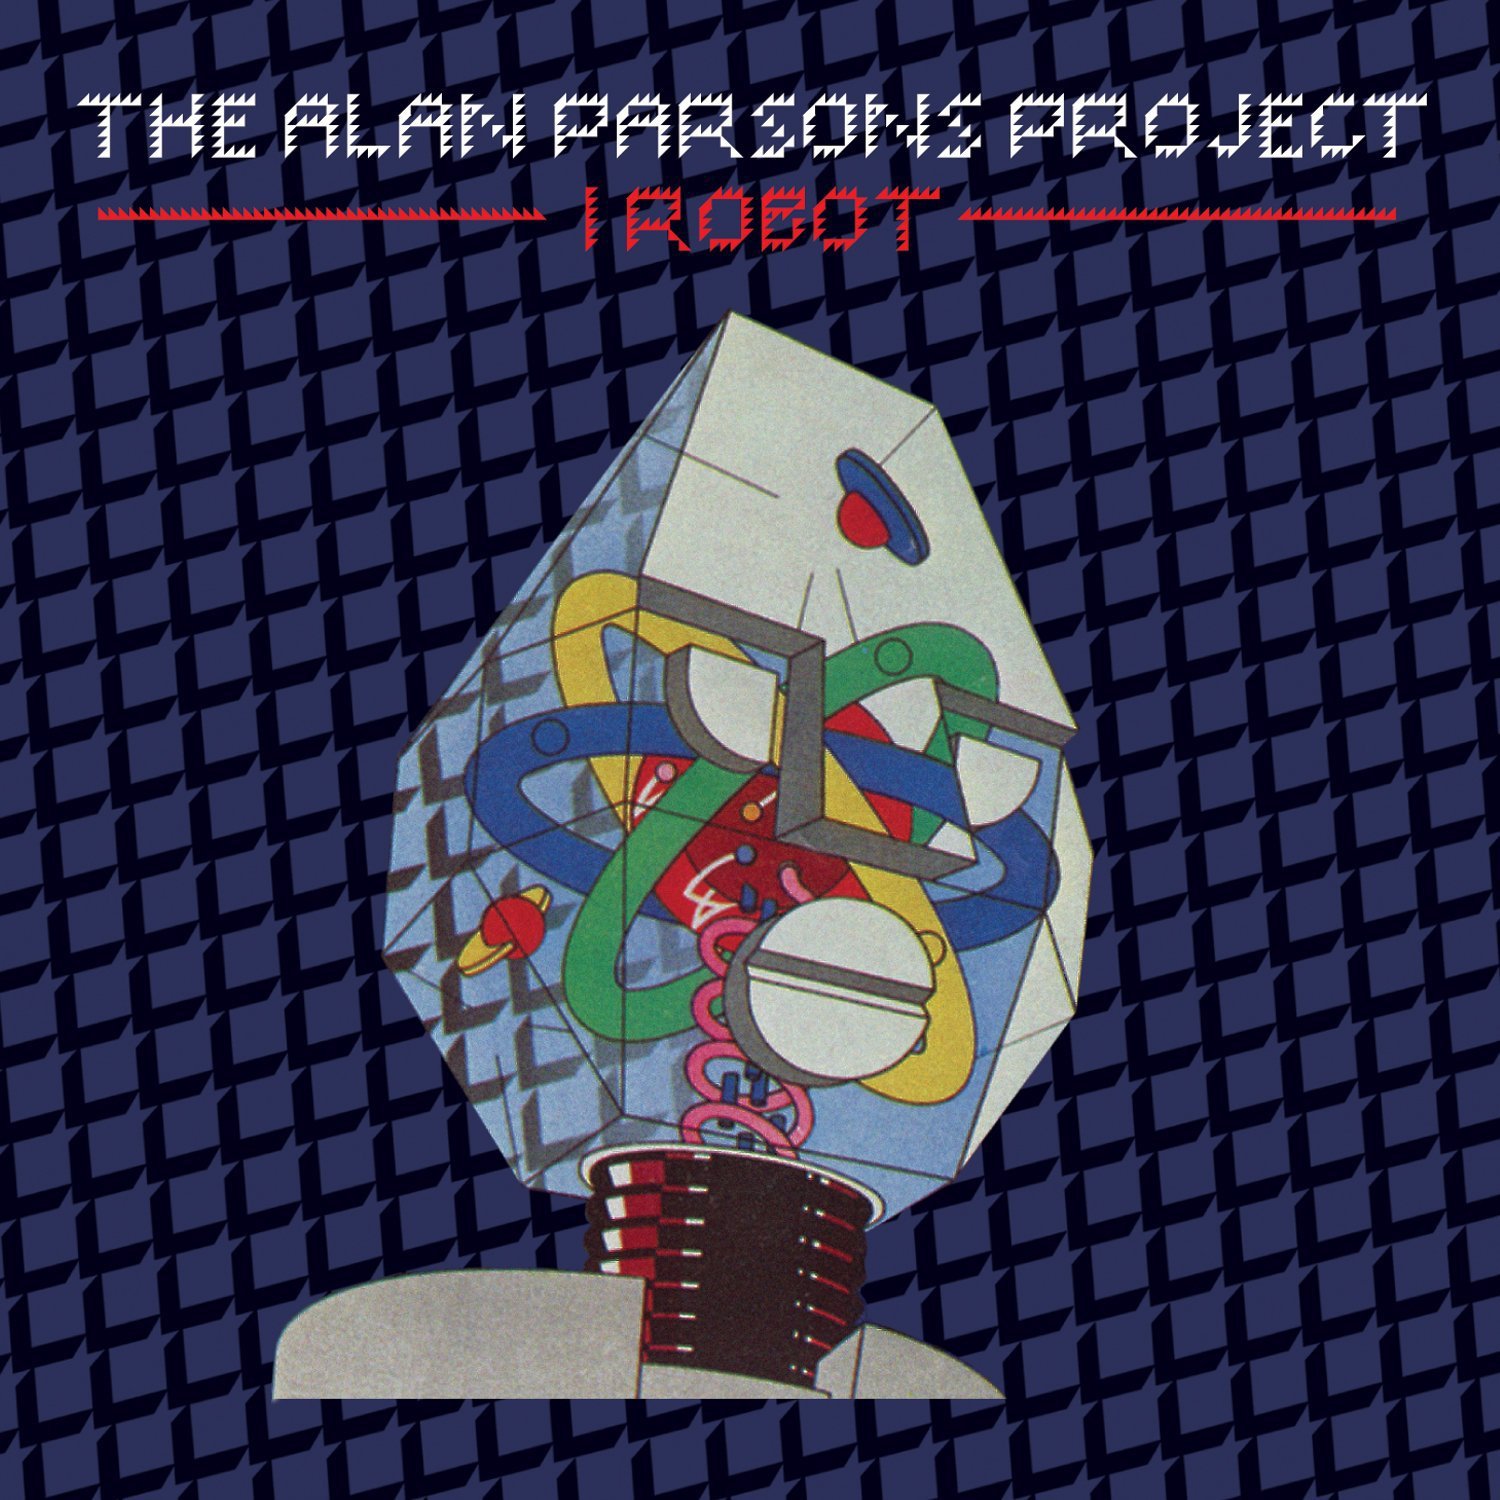 Виниловая пластинка Alan Parsons Project, The, I Robot (8718469533800) the alan parsons project vulture culture lp конверты внутренние coex для грампластинок 12 25шт набор